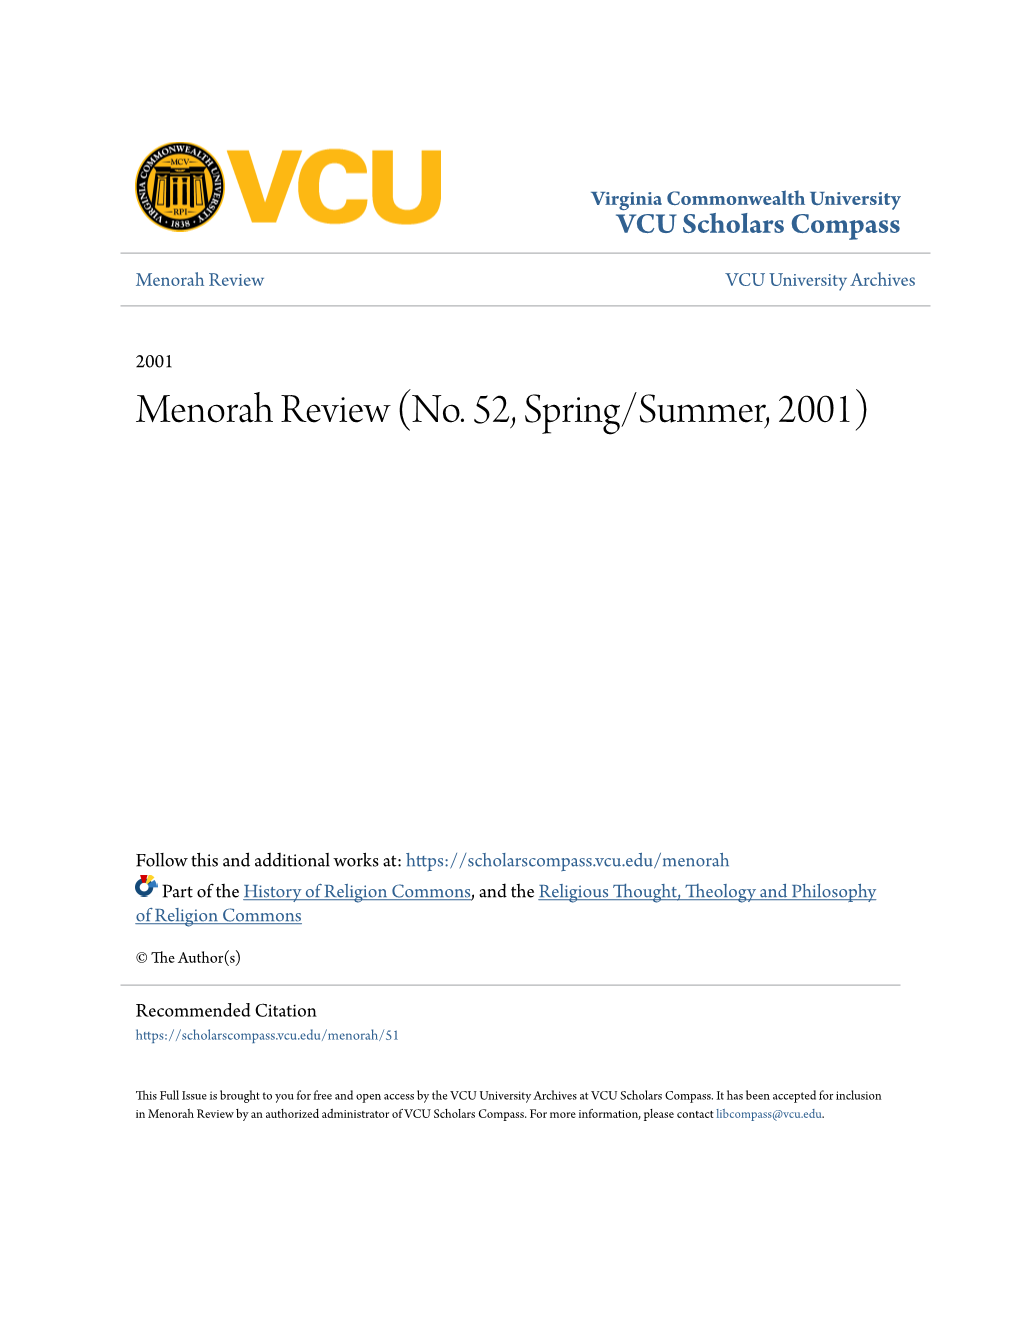 Menorah Review (No. 52, Spring/Summer, 2001)